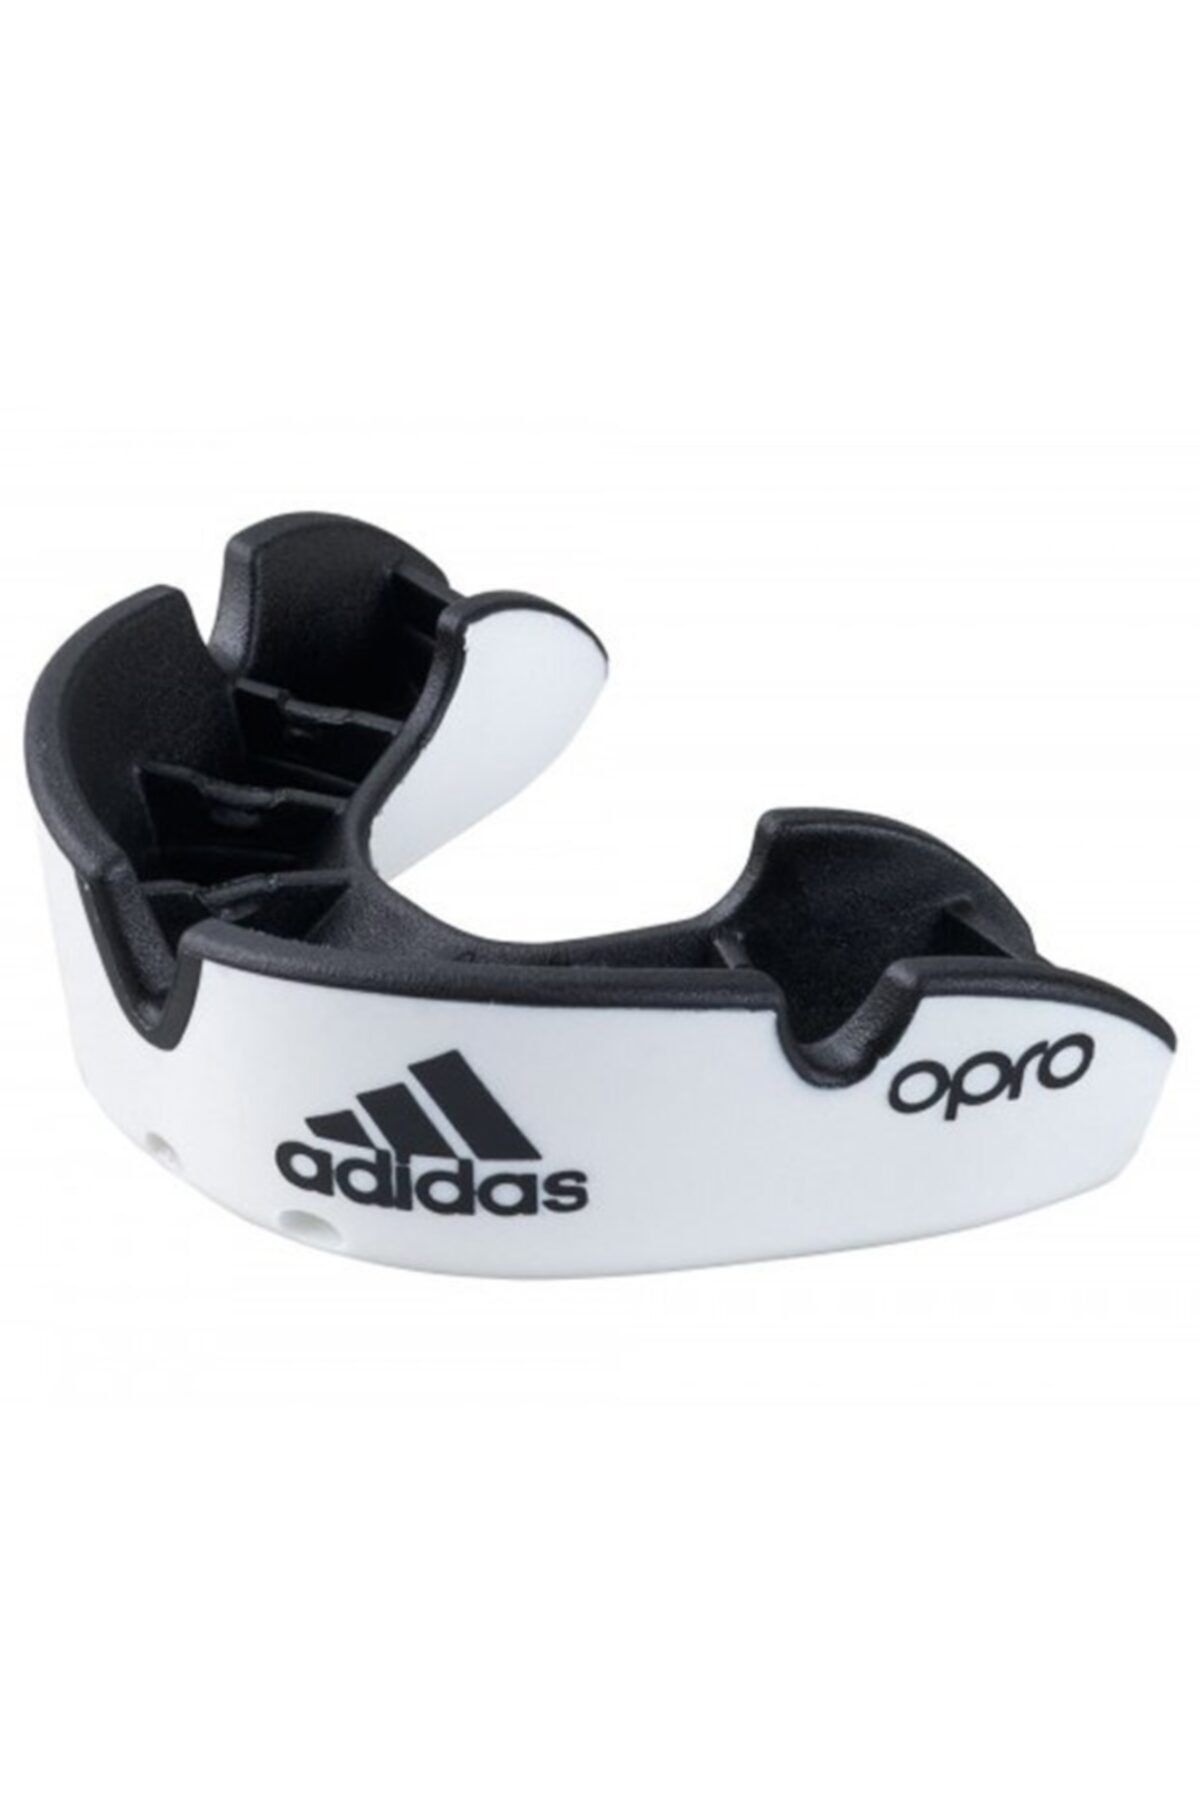 adidas Adıbp32 Silver Dişlik Profesyonel Sporcu Dişliği Opro Mouthguard